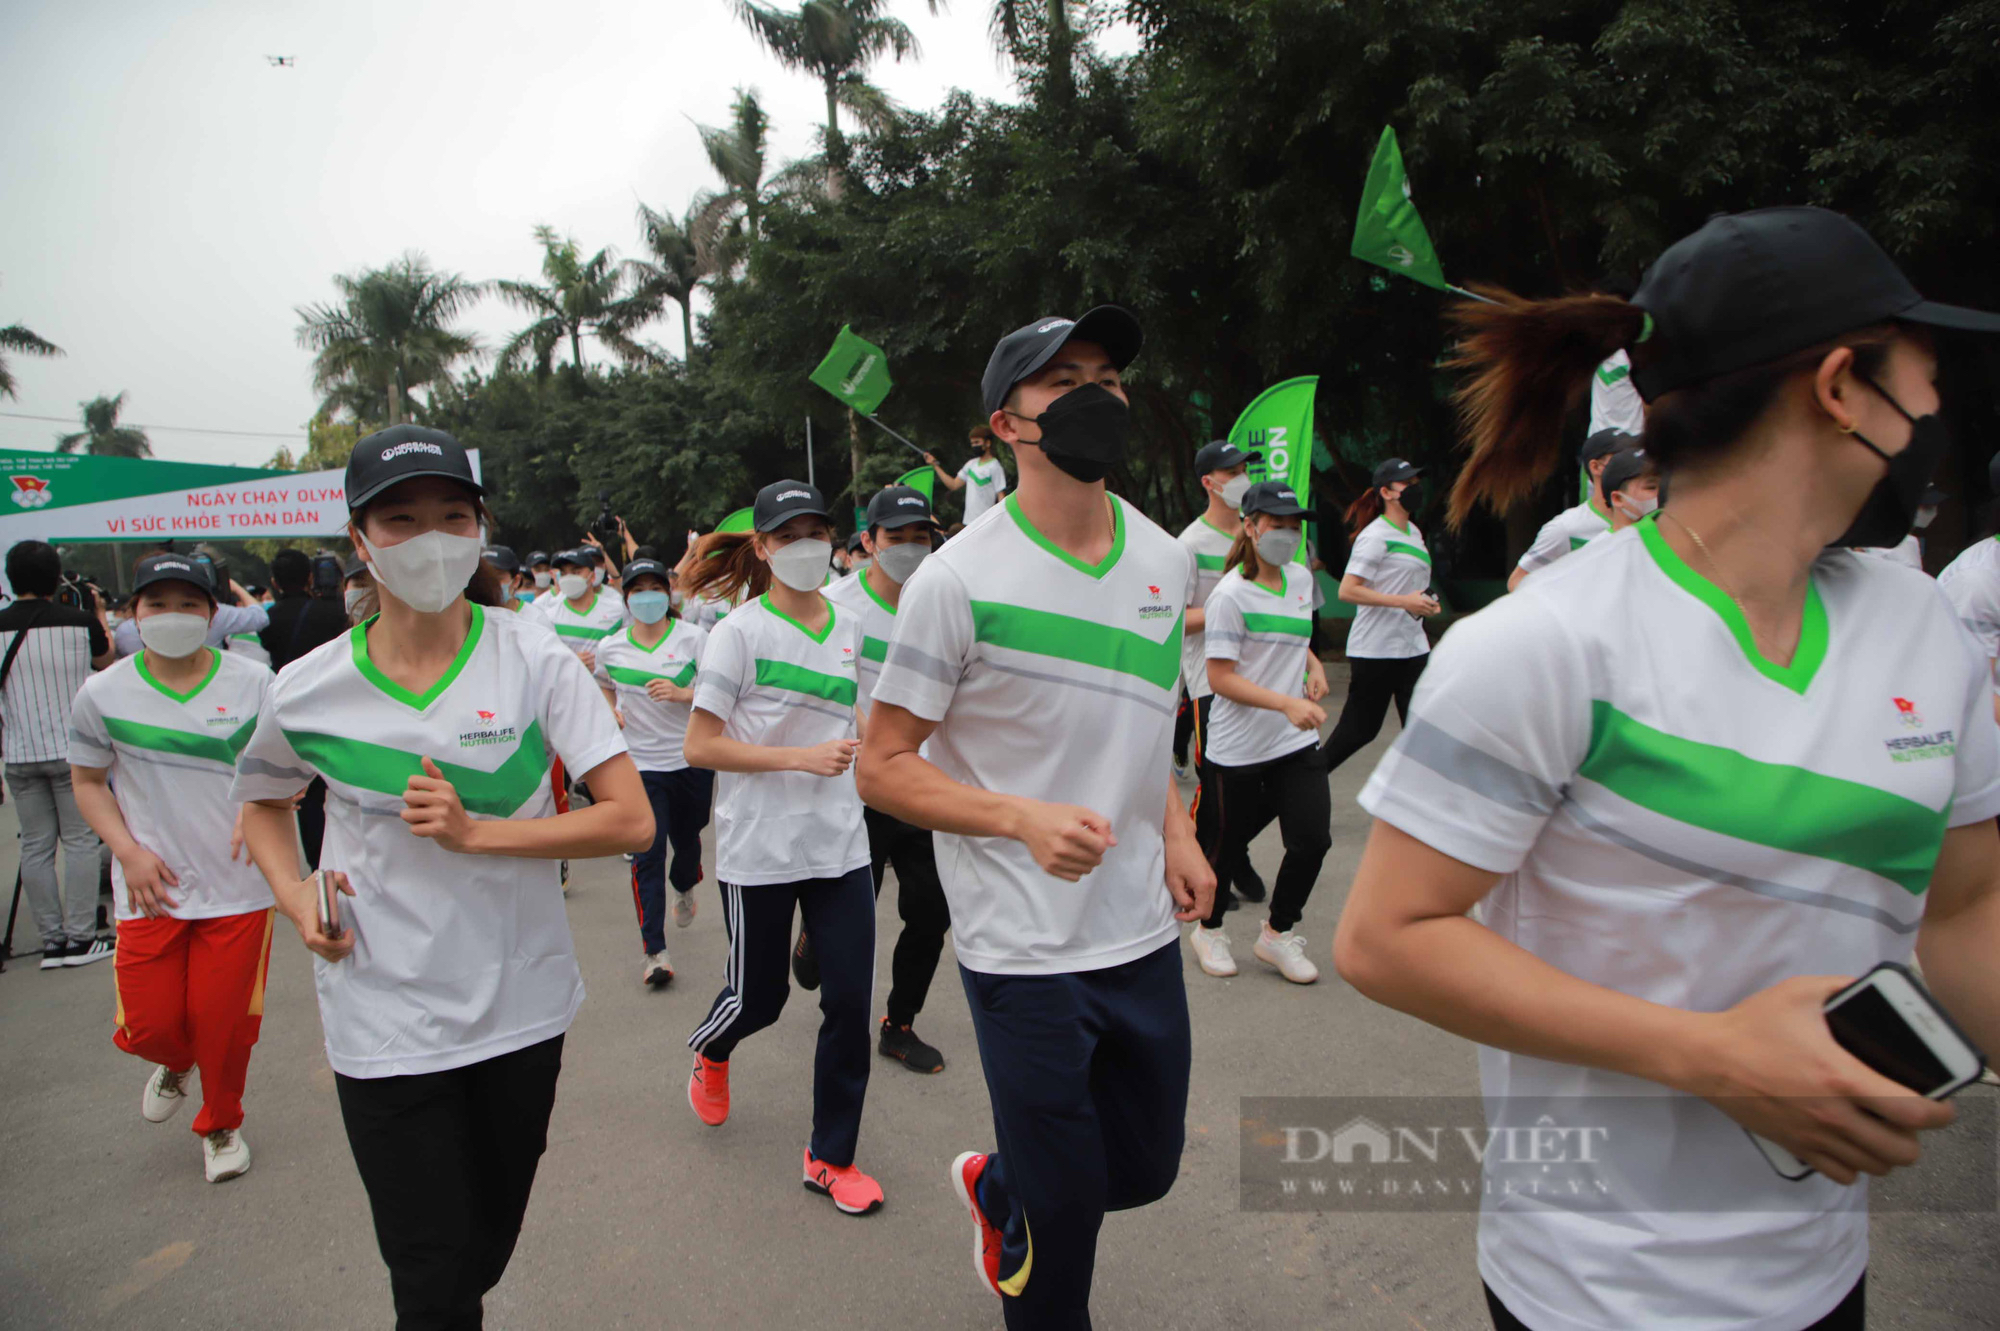 HLV Park Hang-seo và Quang Hải vắng mặt ở Lễ vinh danh của Thể thao Việt Nam - Ảnh 7.